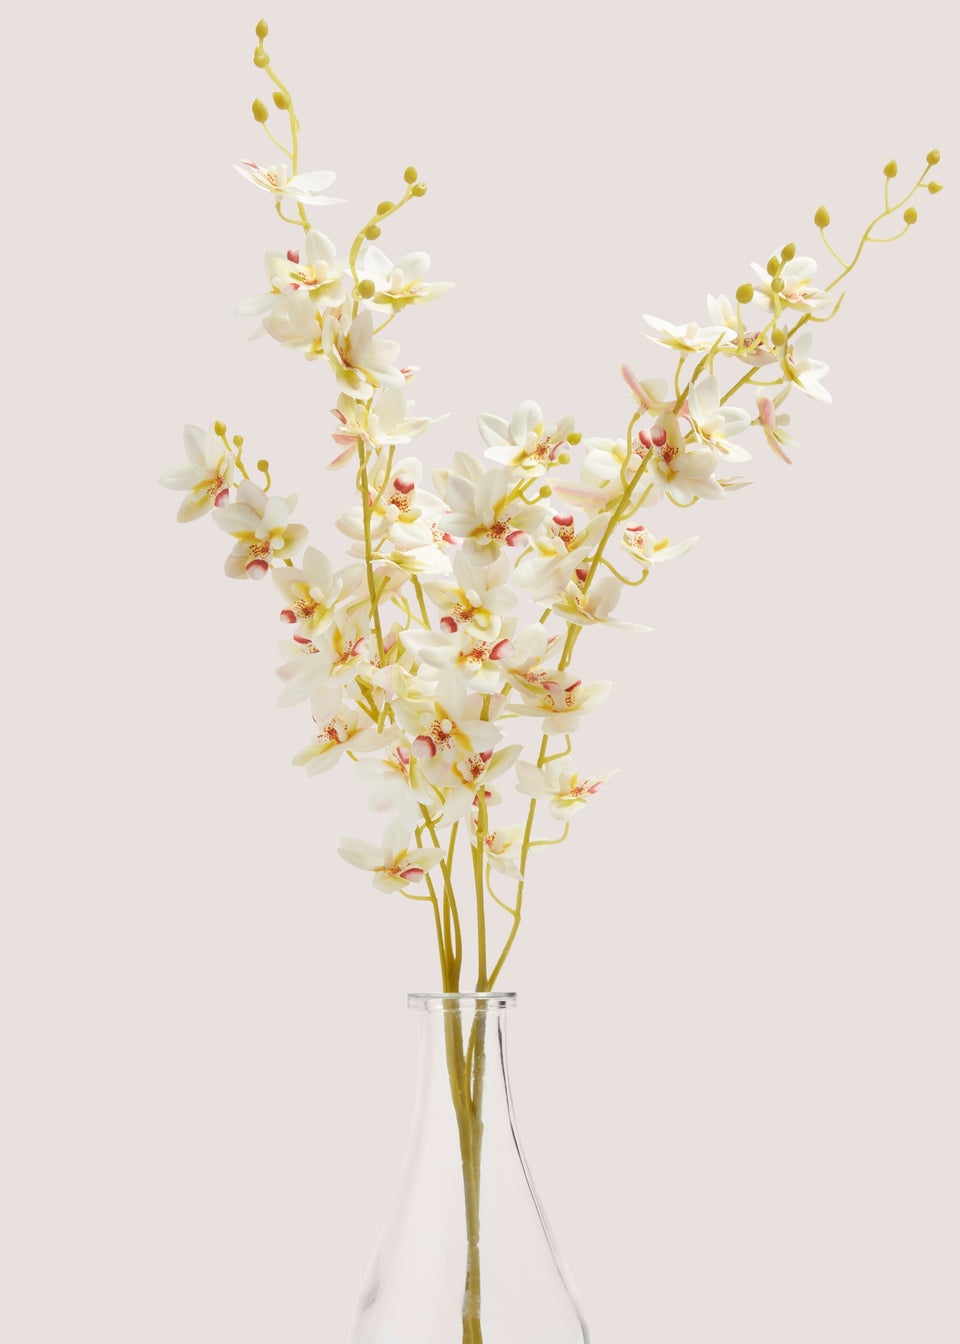 Pink Faux Floral In Glass Vase (58cm x 34cm x 13cm)